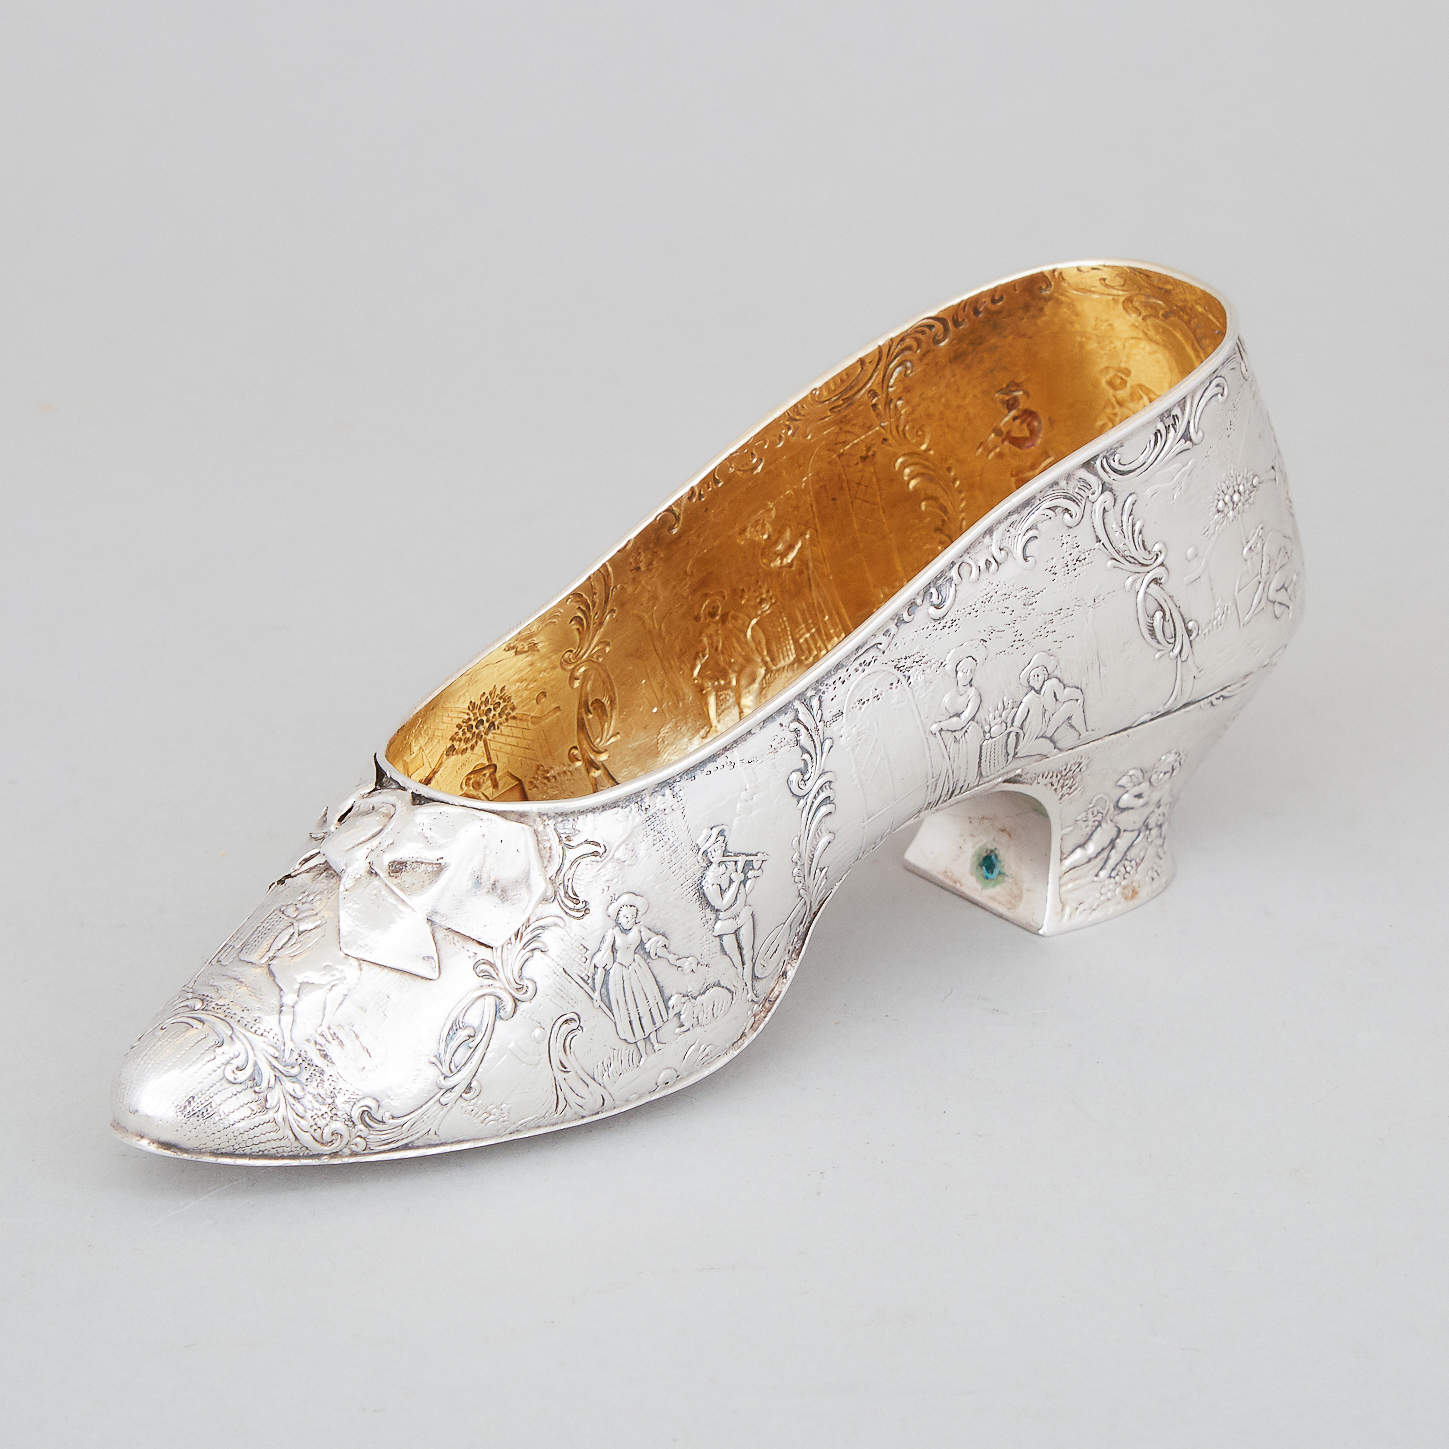 German Silver Novelty Shoe, Simon Rosenau, Bad Kissingen, c.1900